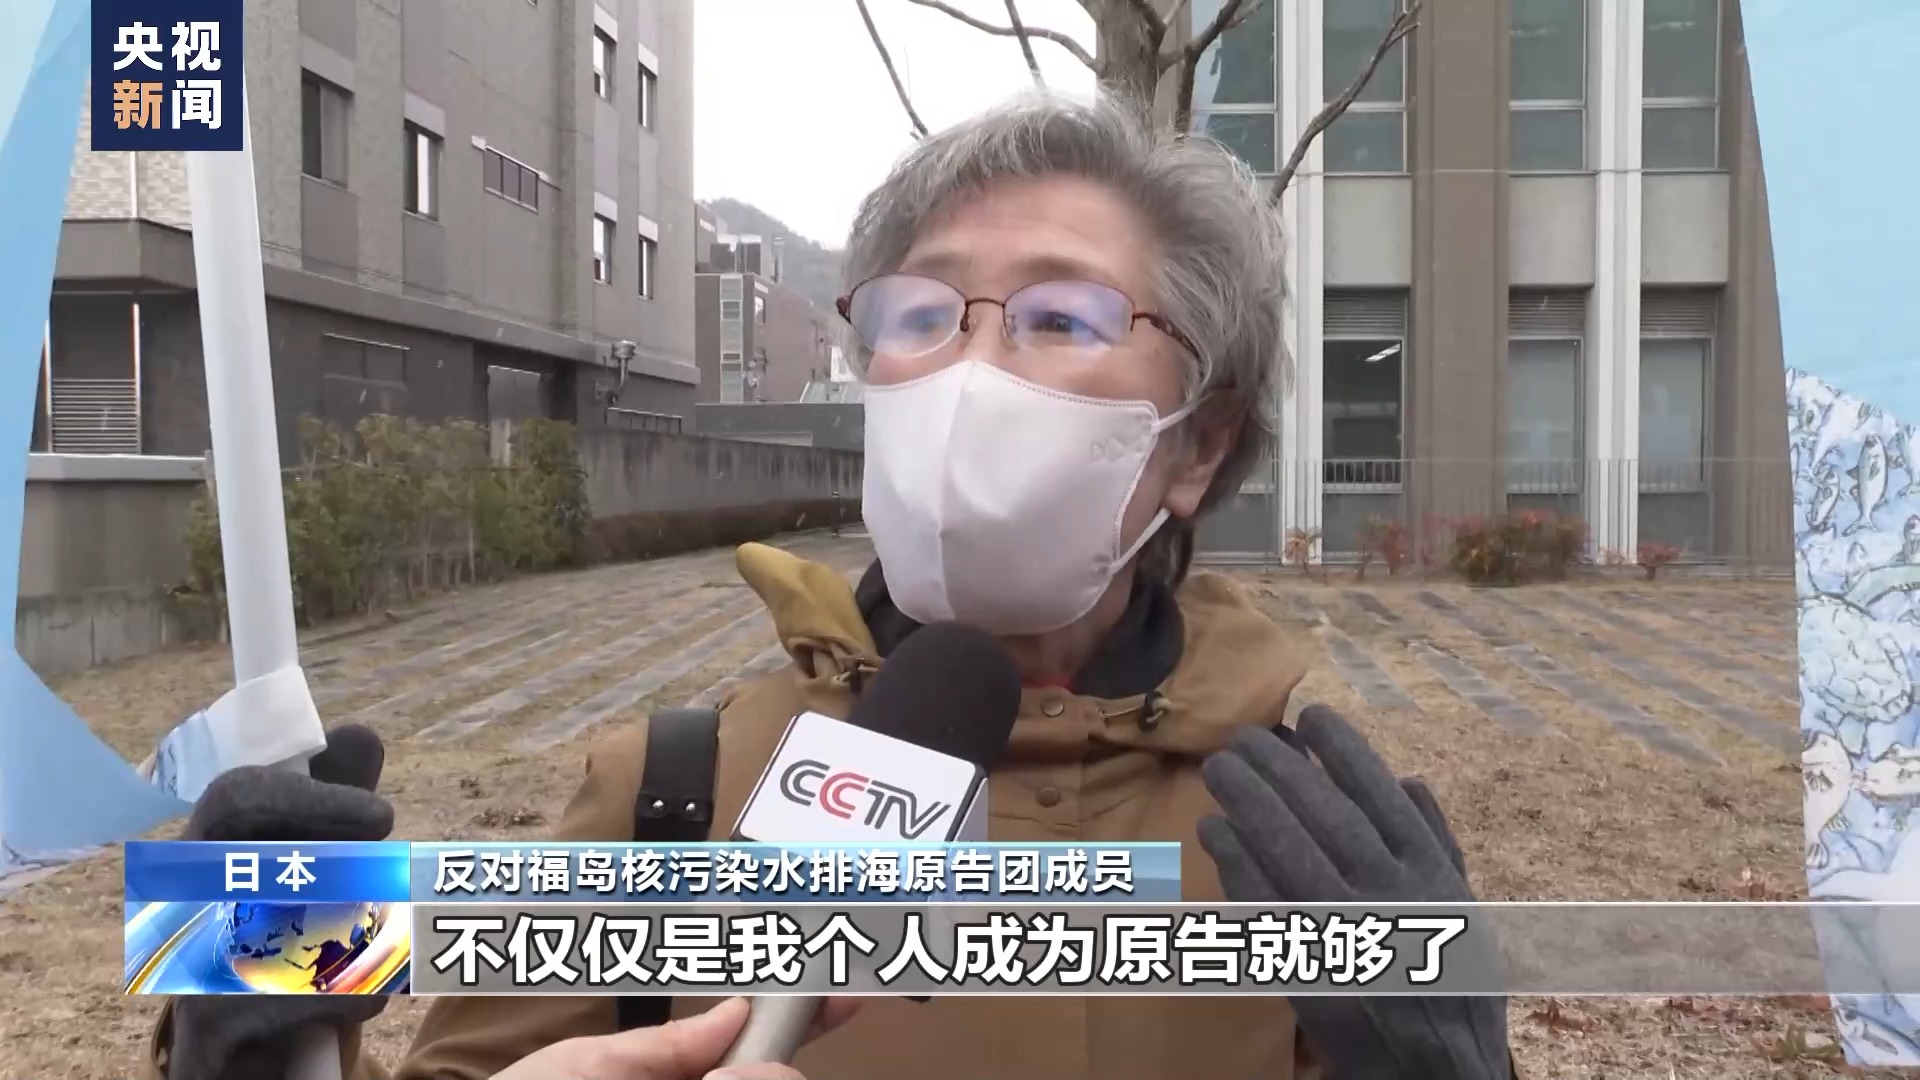 日本民众发起集体诉讼 要求停止核污染水排海